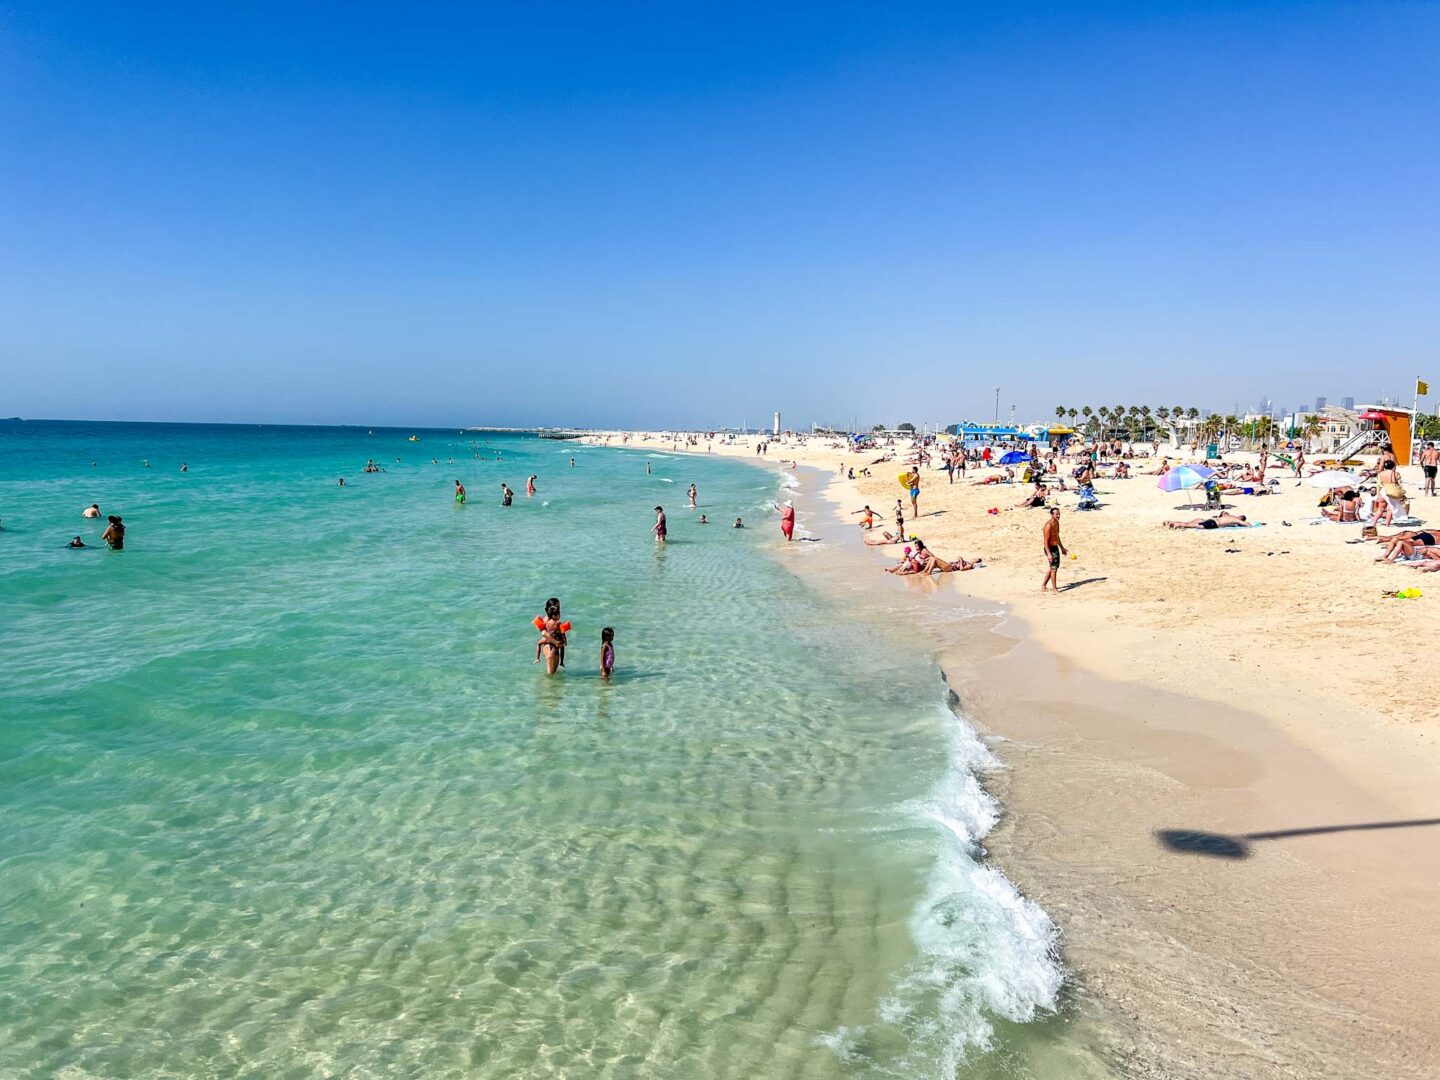 Jumeirah Beach Residence beach, where to stay in dubai 